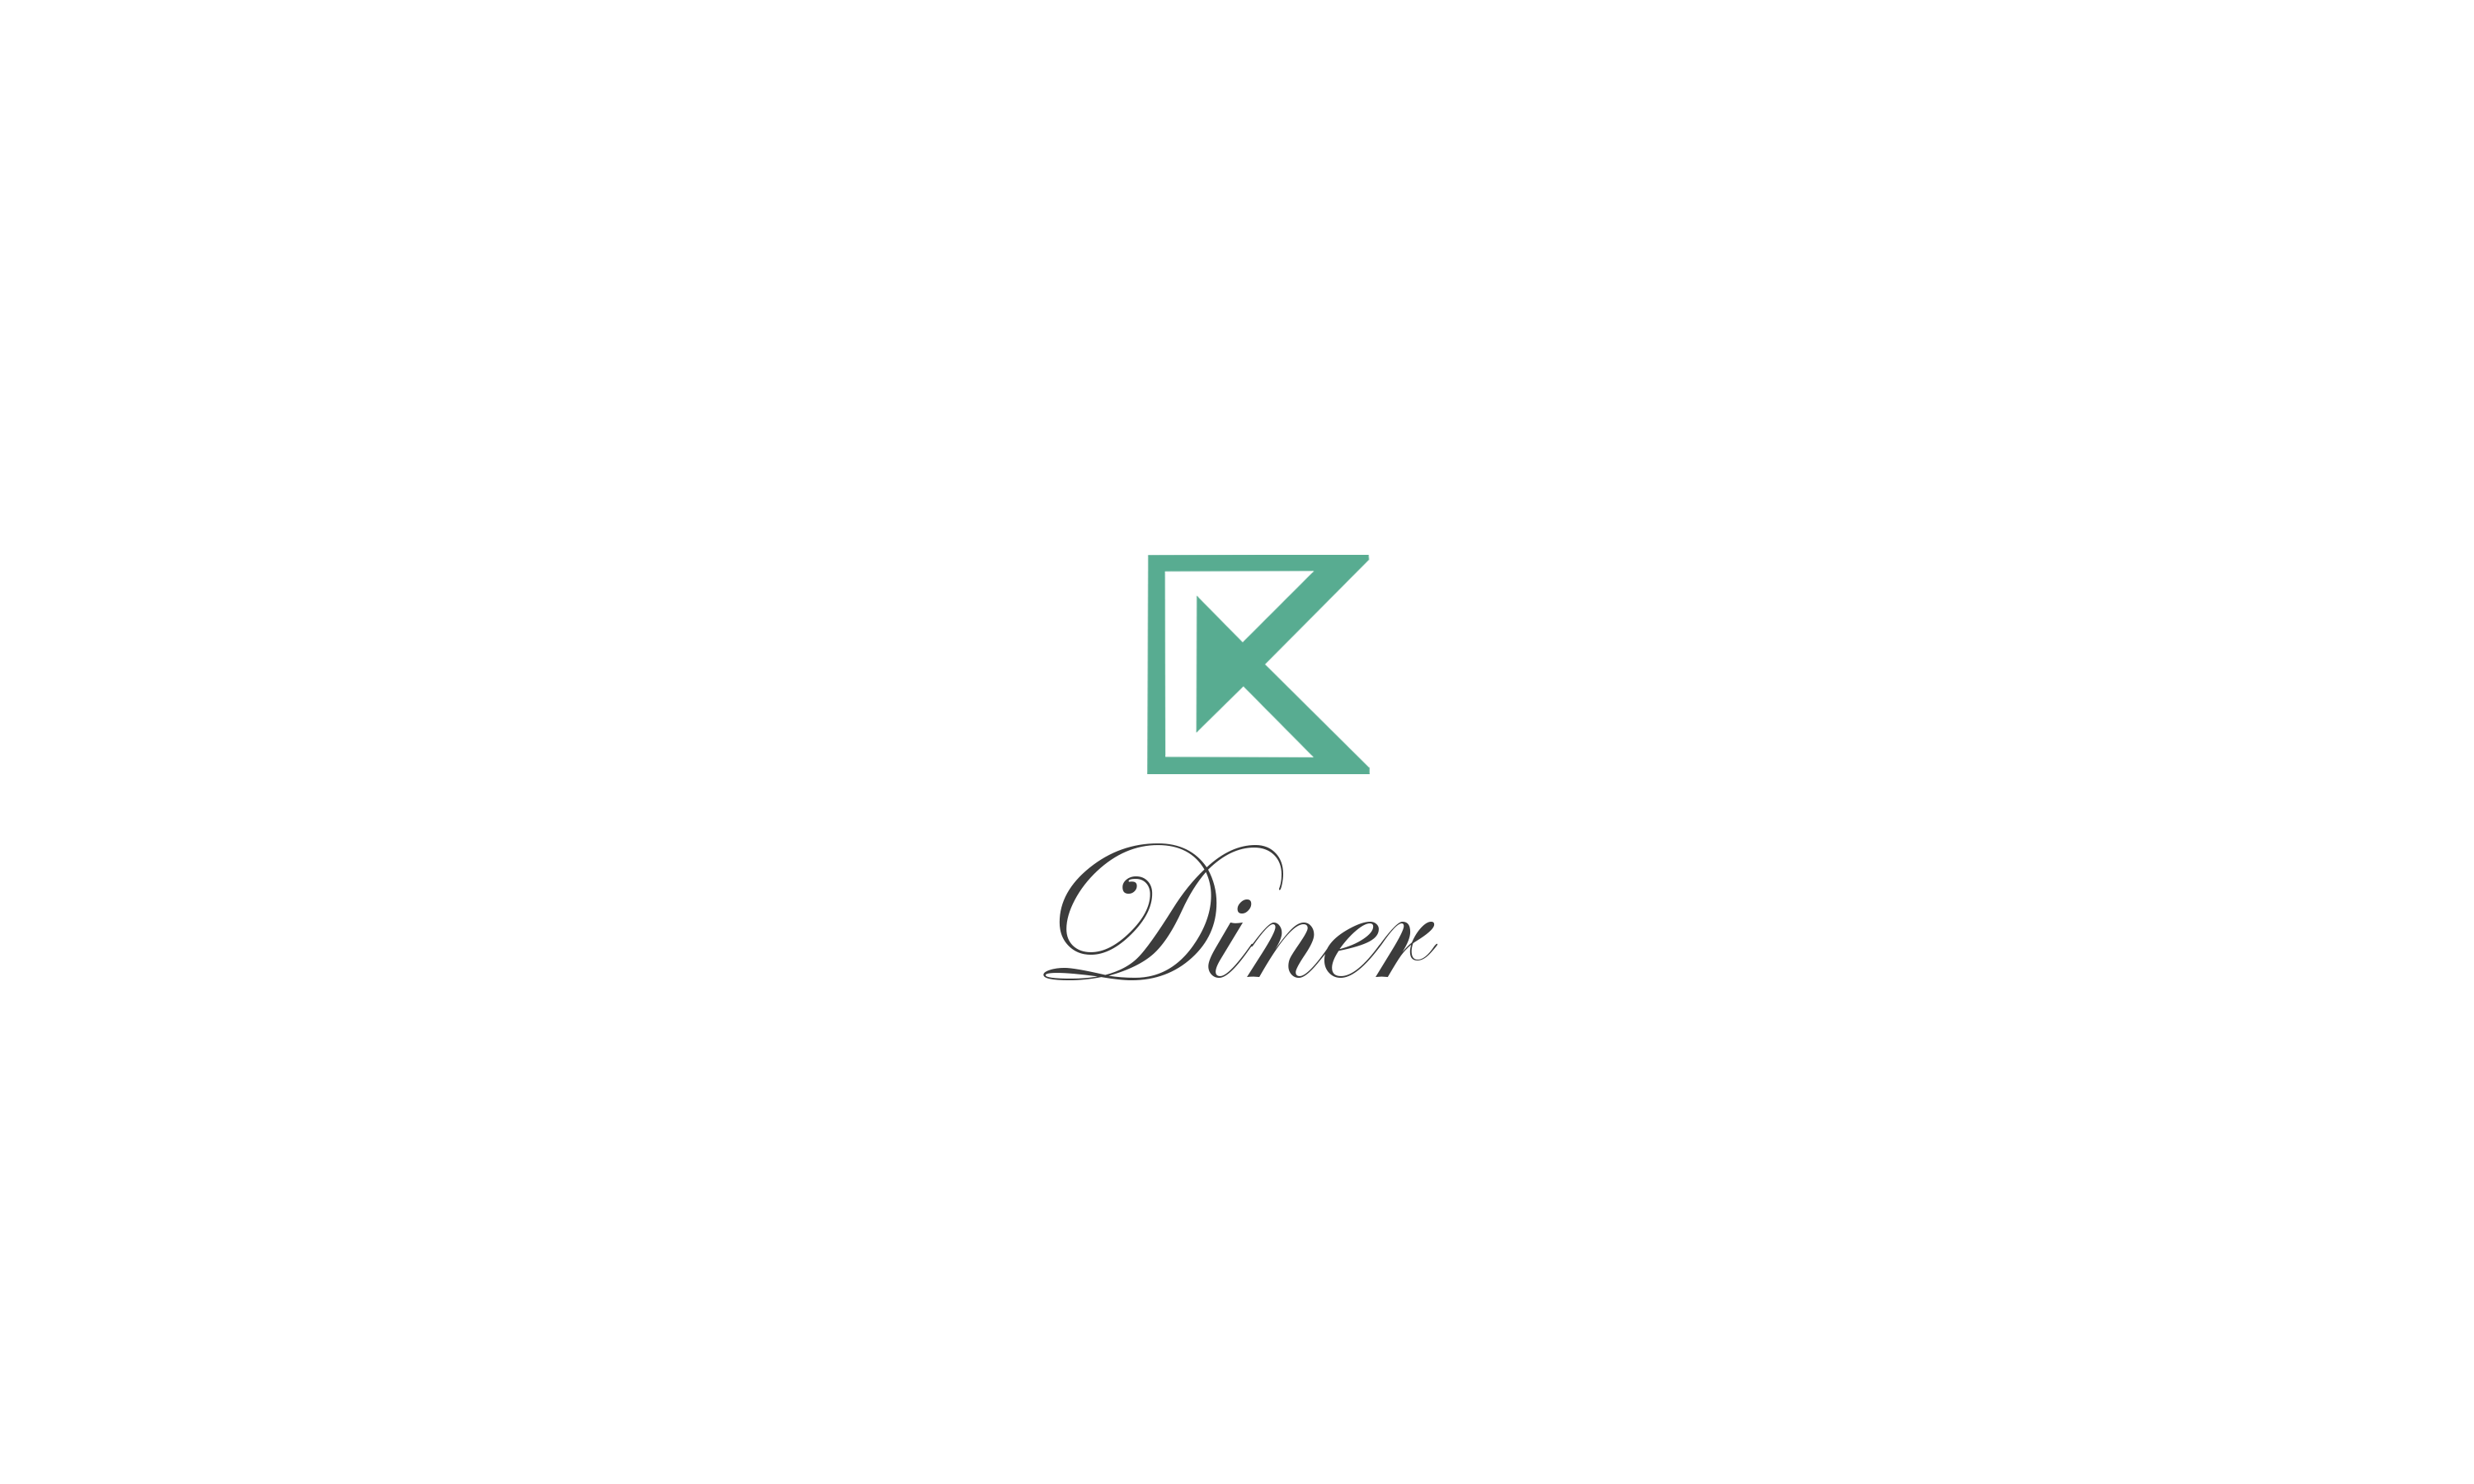 CK-Diner-logo-d93f7f47